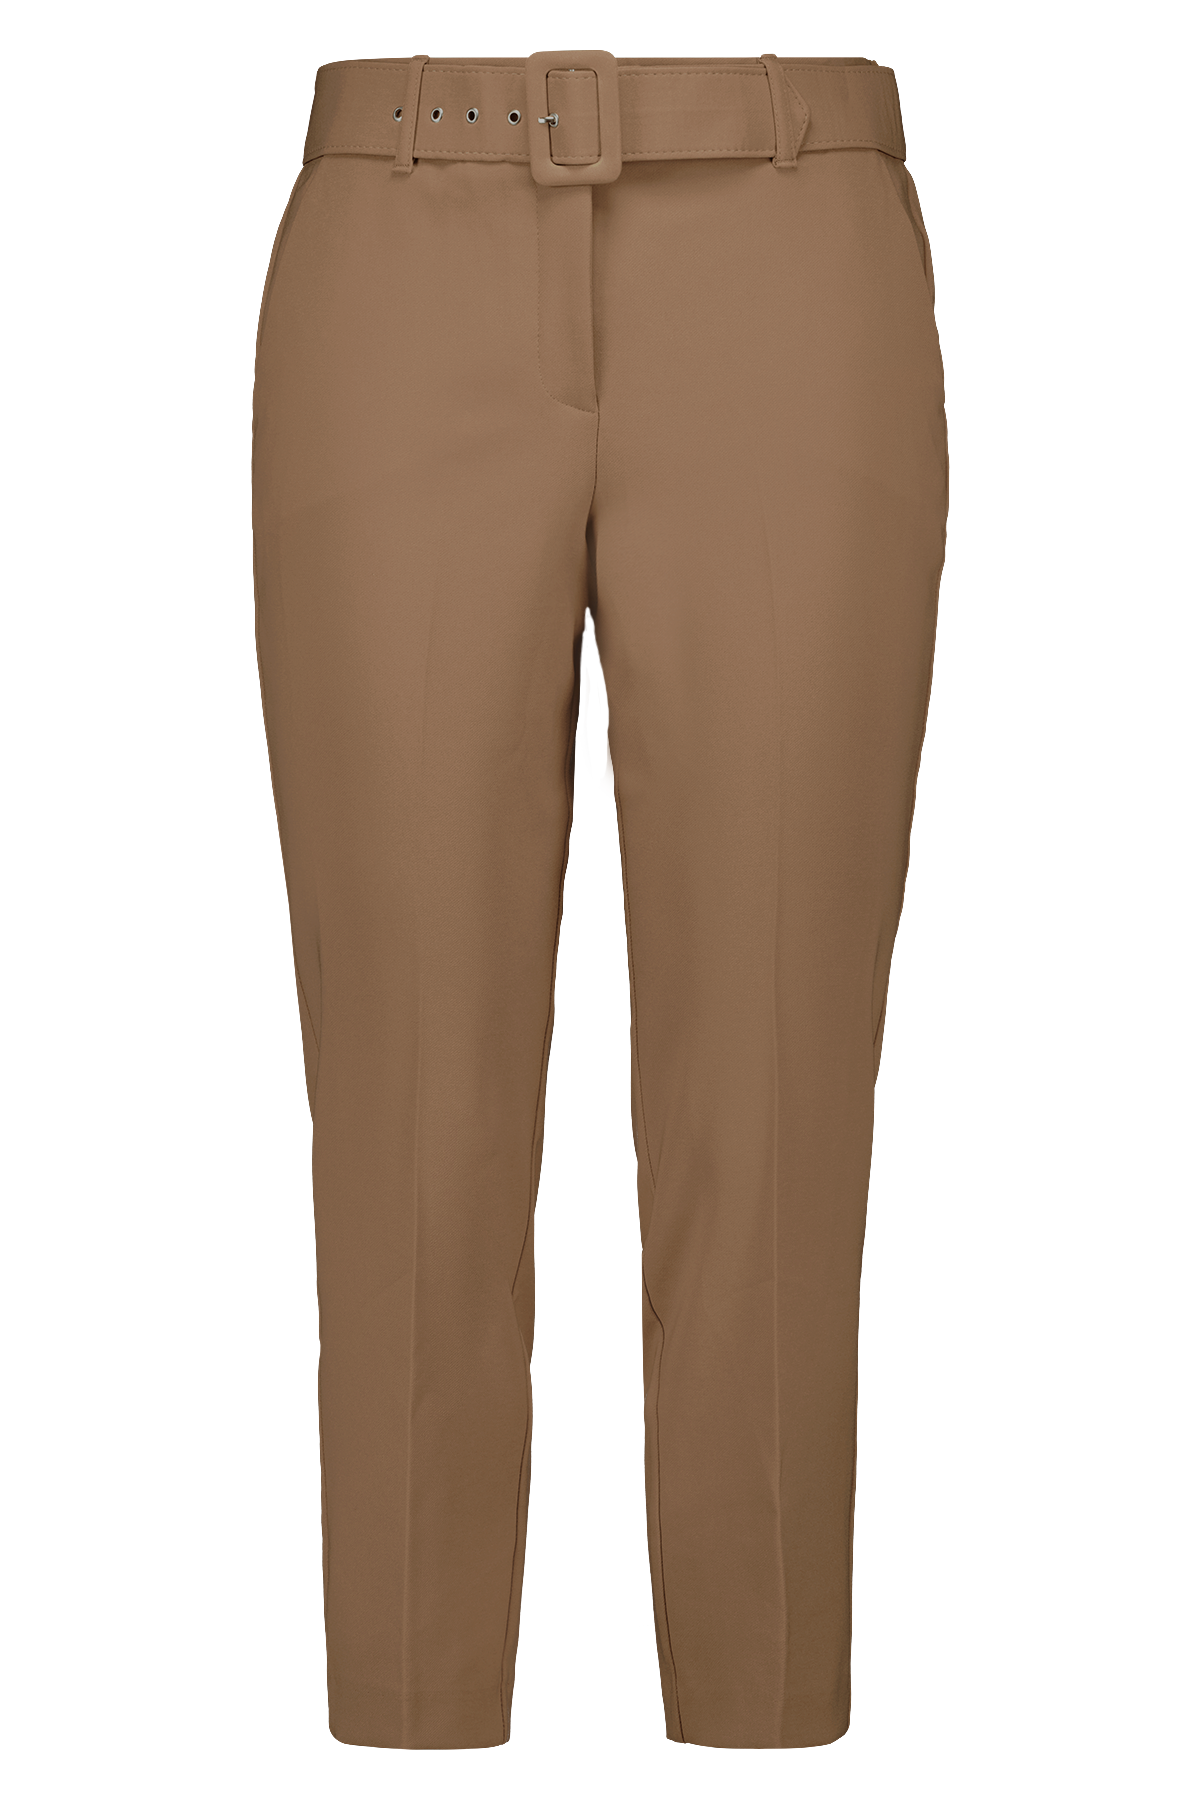 Pantalon avec ceinture image 1